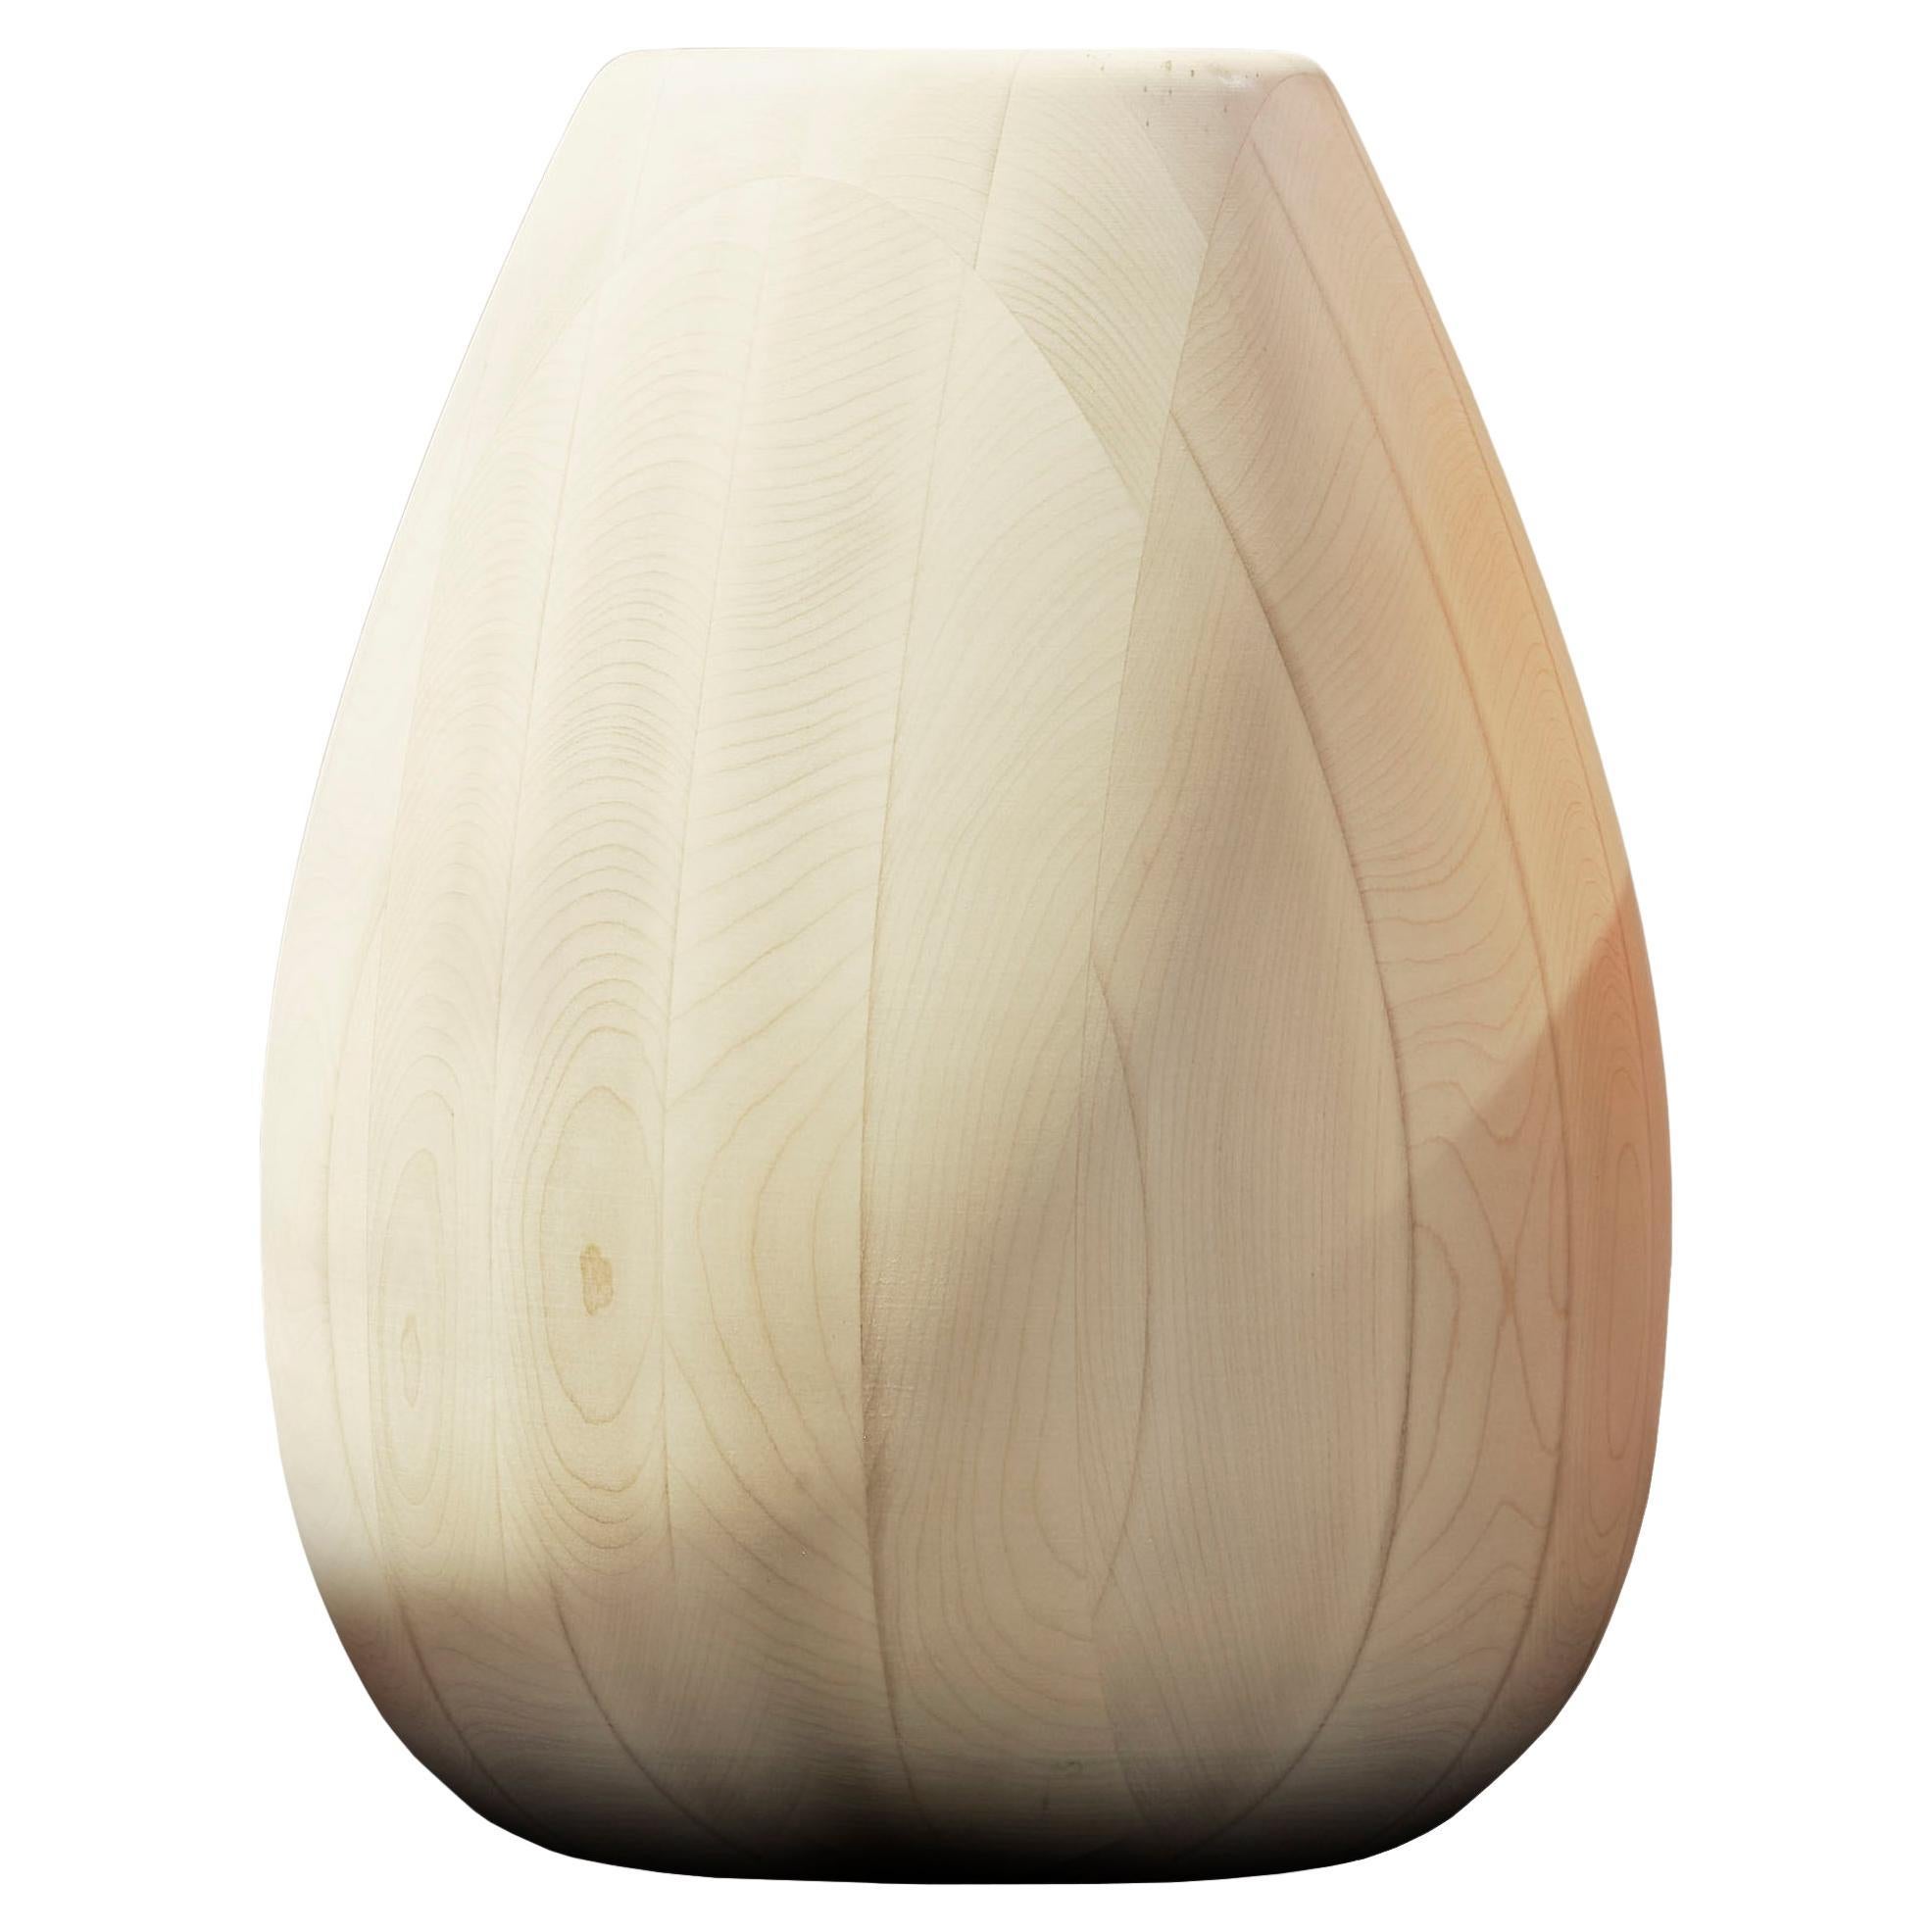 Maple Wood Vase h25 design Franco Albini - edit b Officina della Scala For Sale